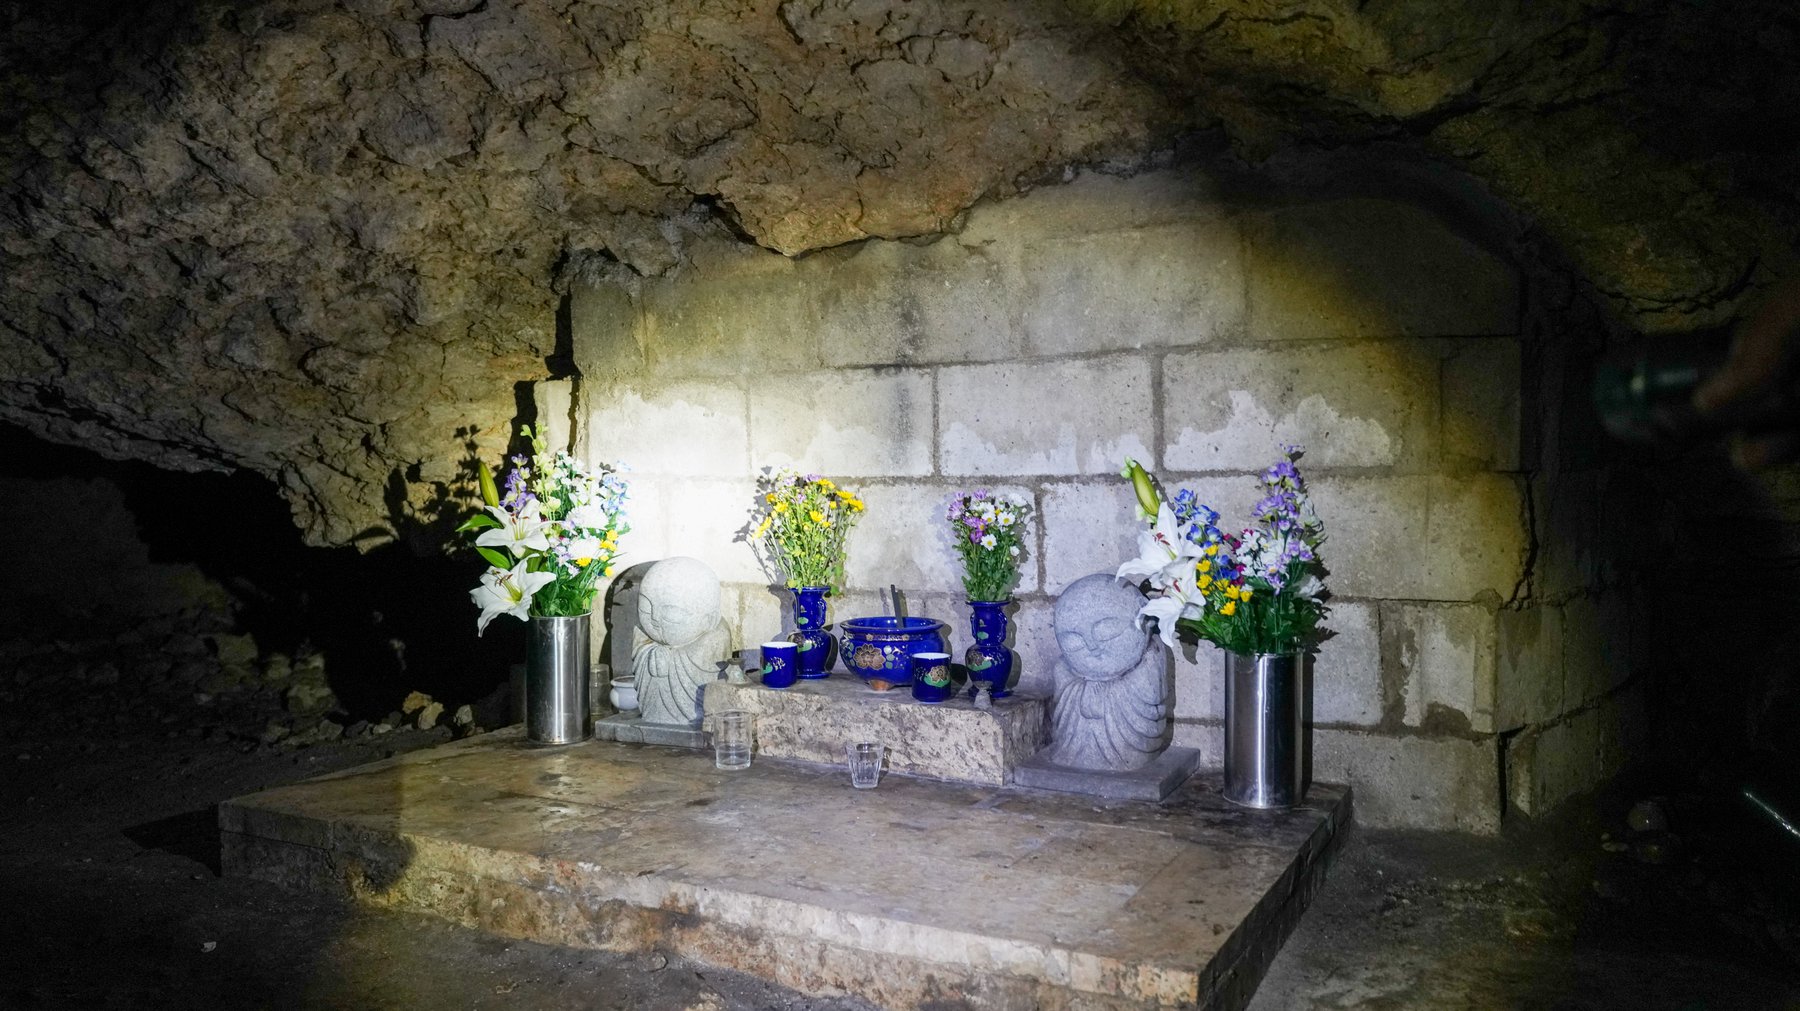 치비치리동굴 안에는 당시 희생된 오키나와 주민들을 추모하는 위령제단이 만들어져있습니다